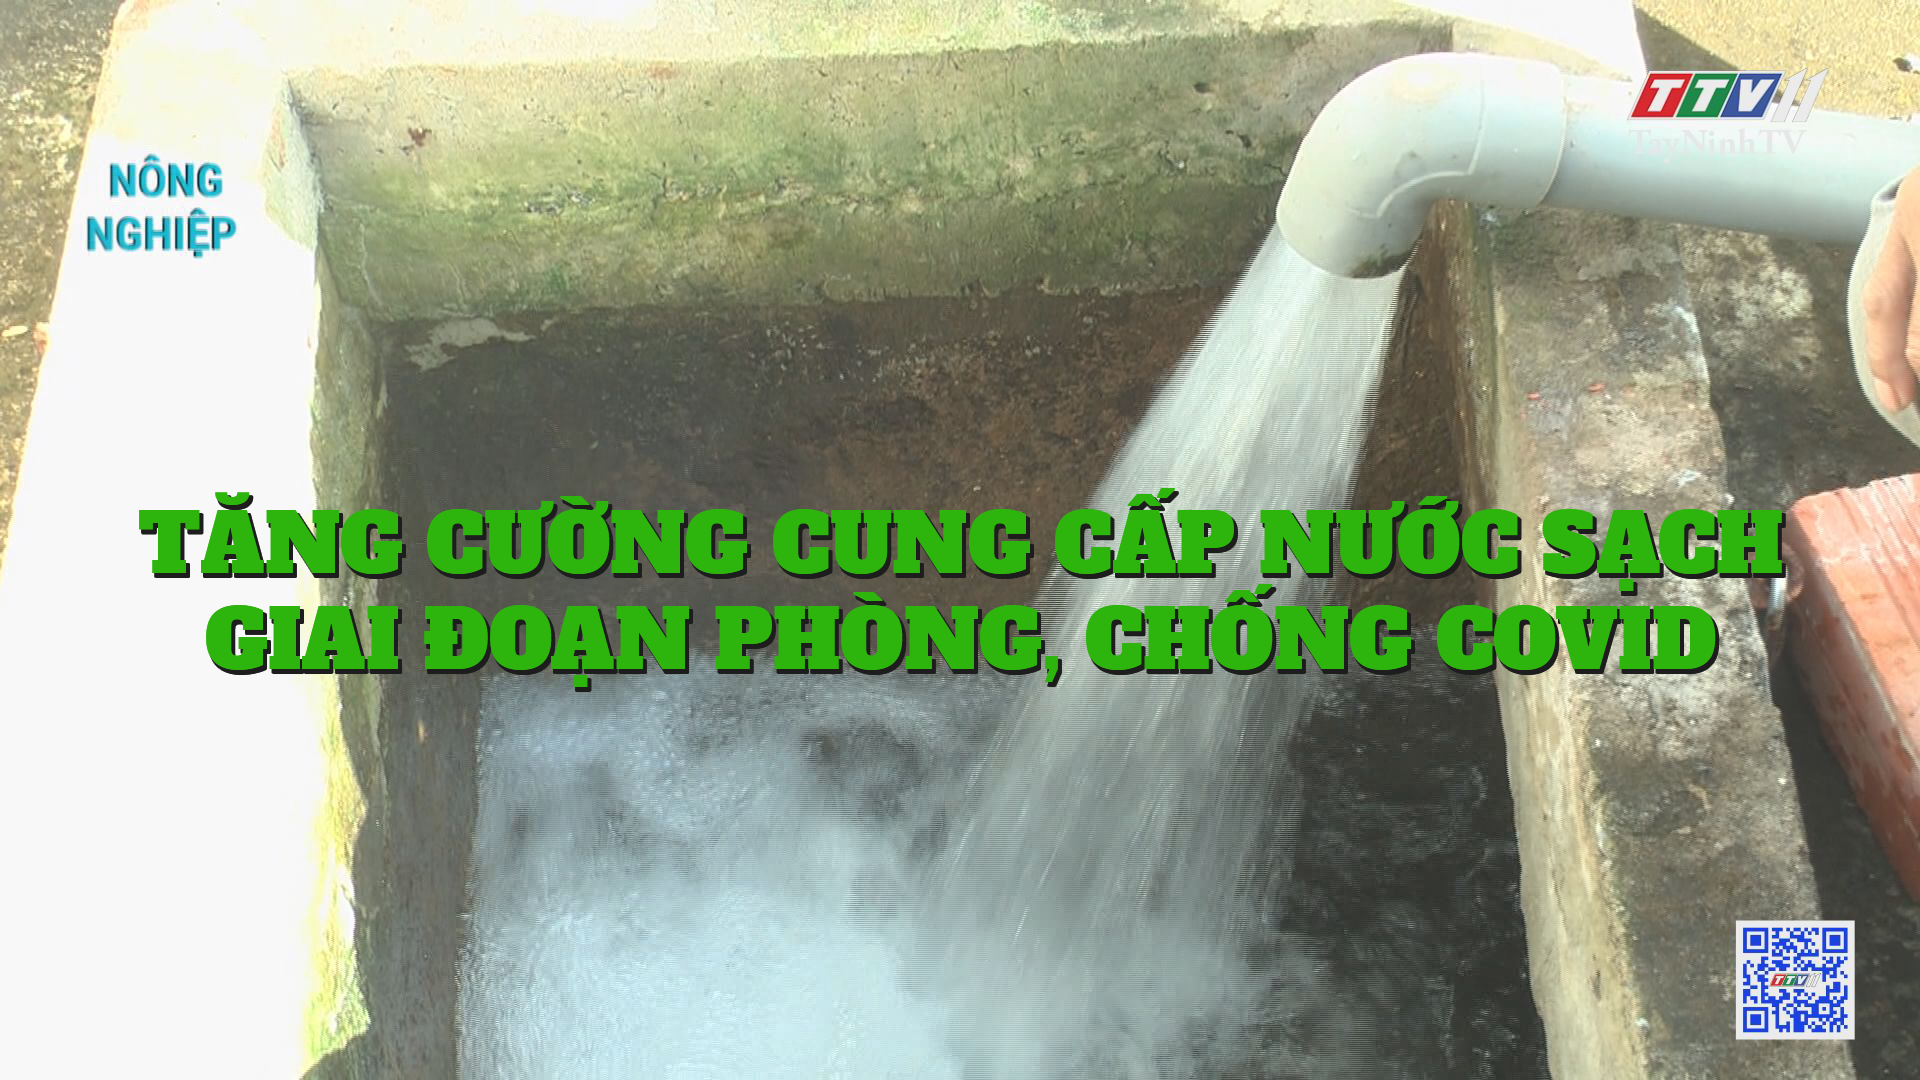 Tăng cường cung cấp nước sạch giai đoạn phòng, chống COVID | NÔNG NGHIỆP TÂY NINH | TayNinhTV